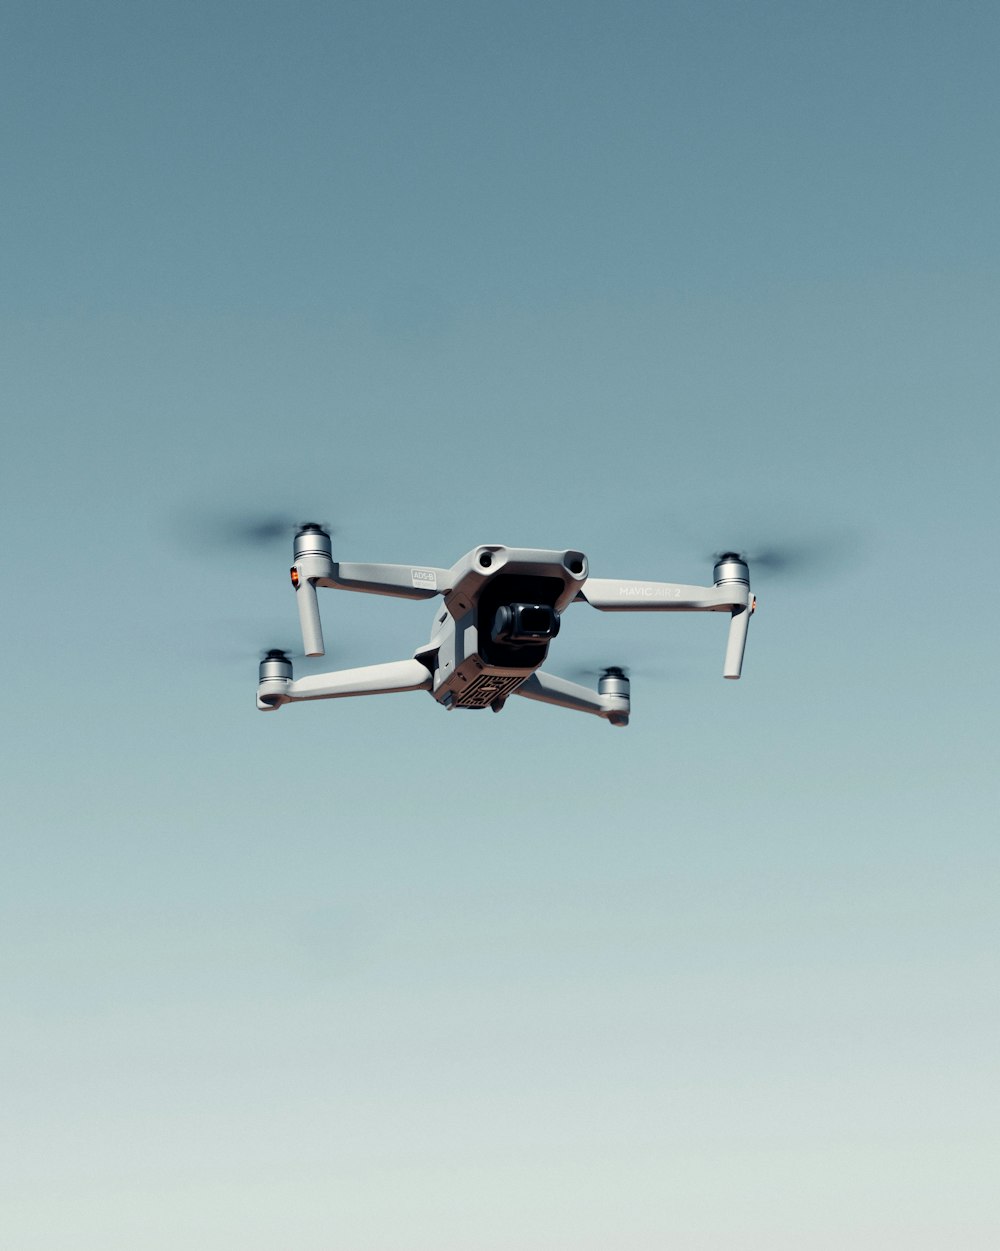 drone preto e branco voando sob o céu azul durante o dia